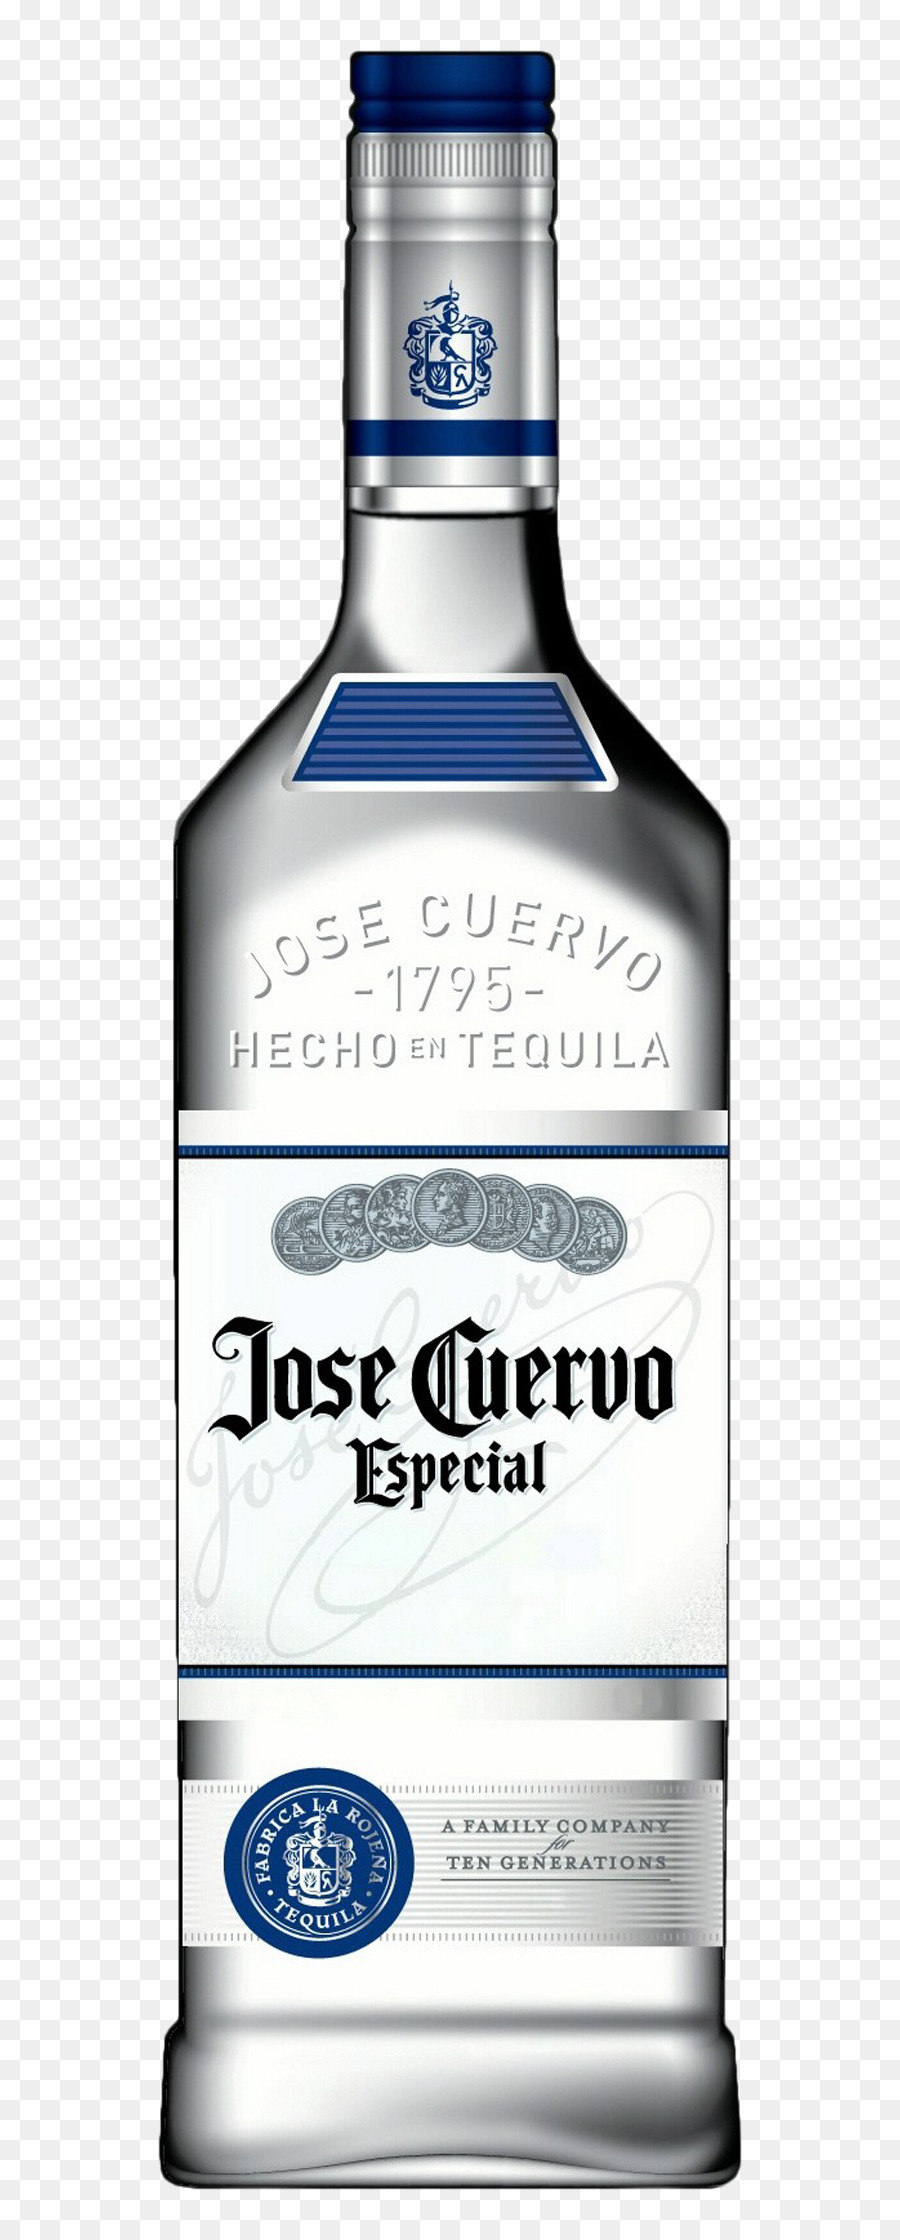 Jose Cuervo Đặc Biệt Bạc Rượu Tequila Jose Cuervo Đặc Biệt Bạc Tequila - tequila